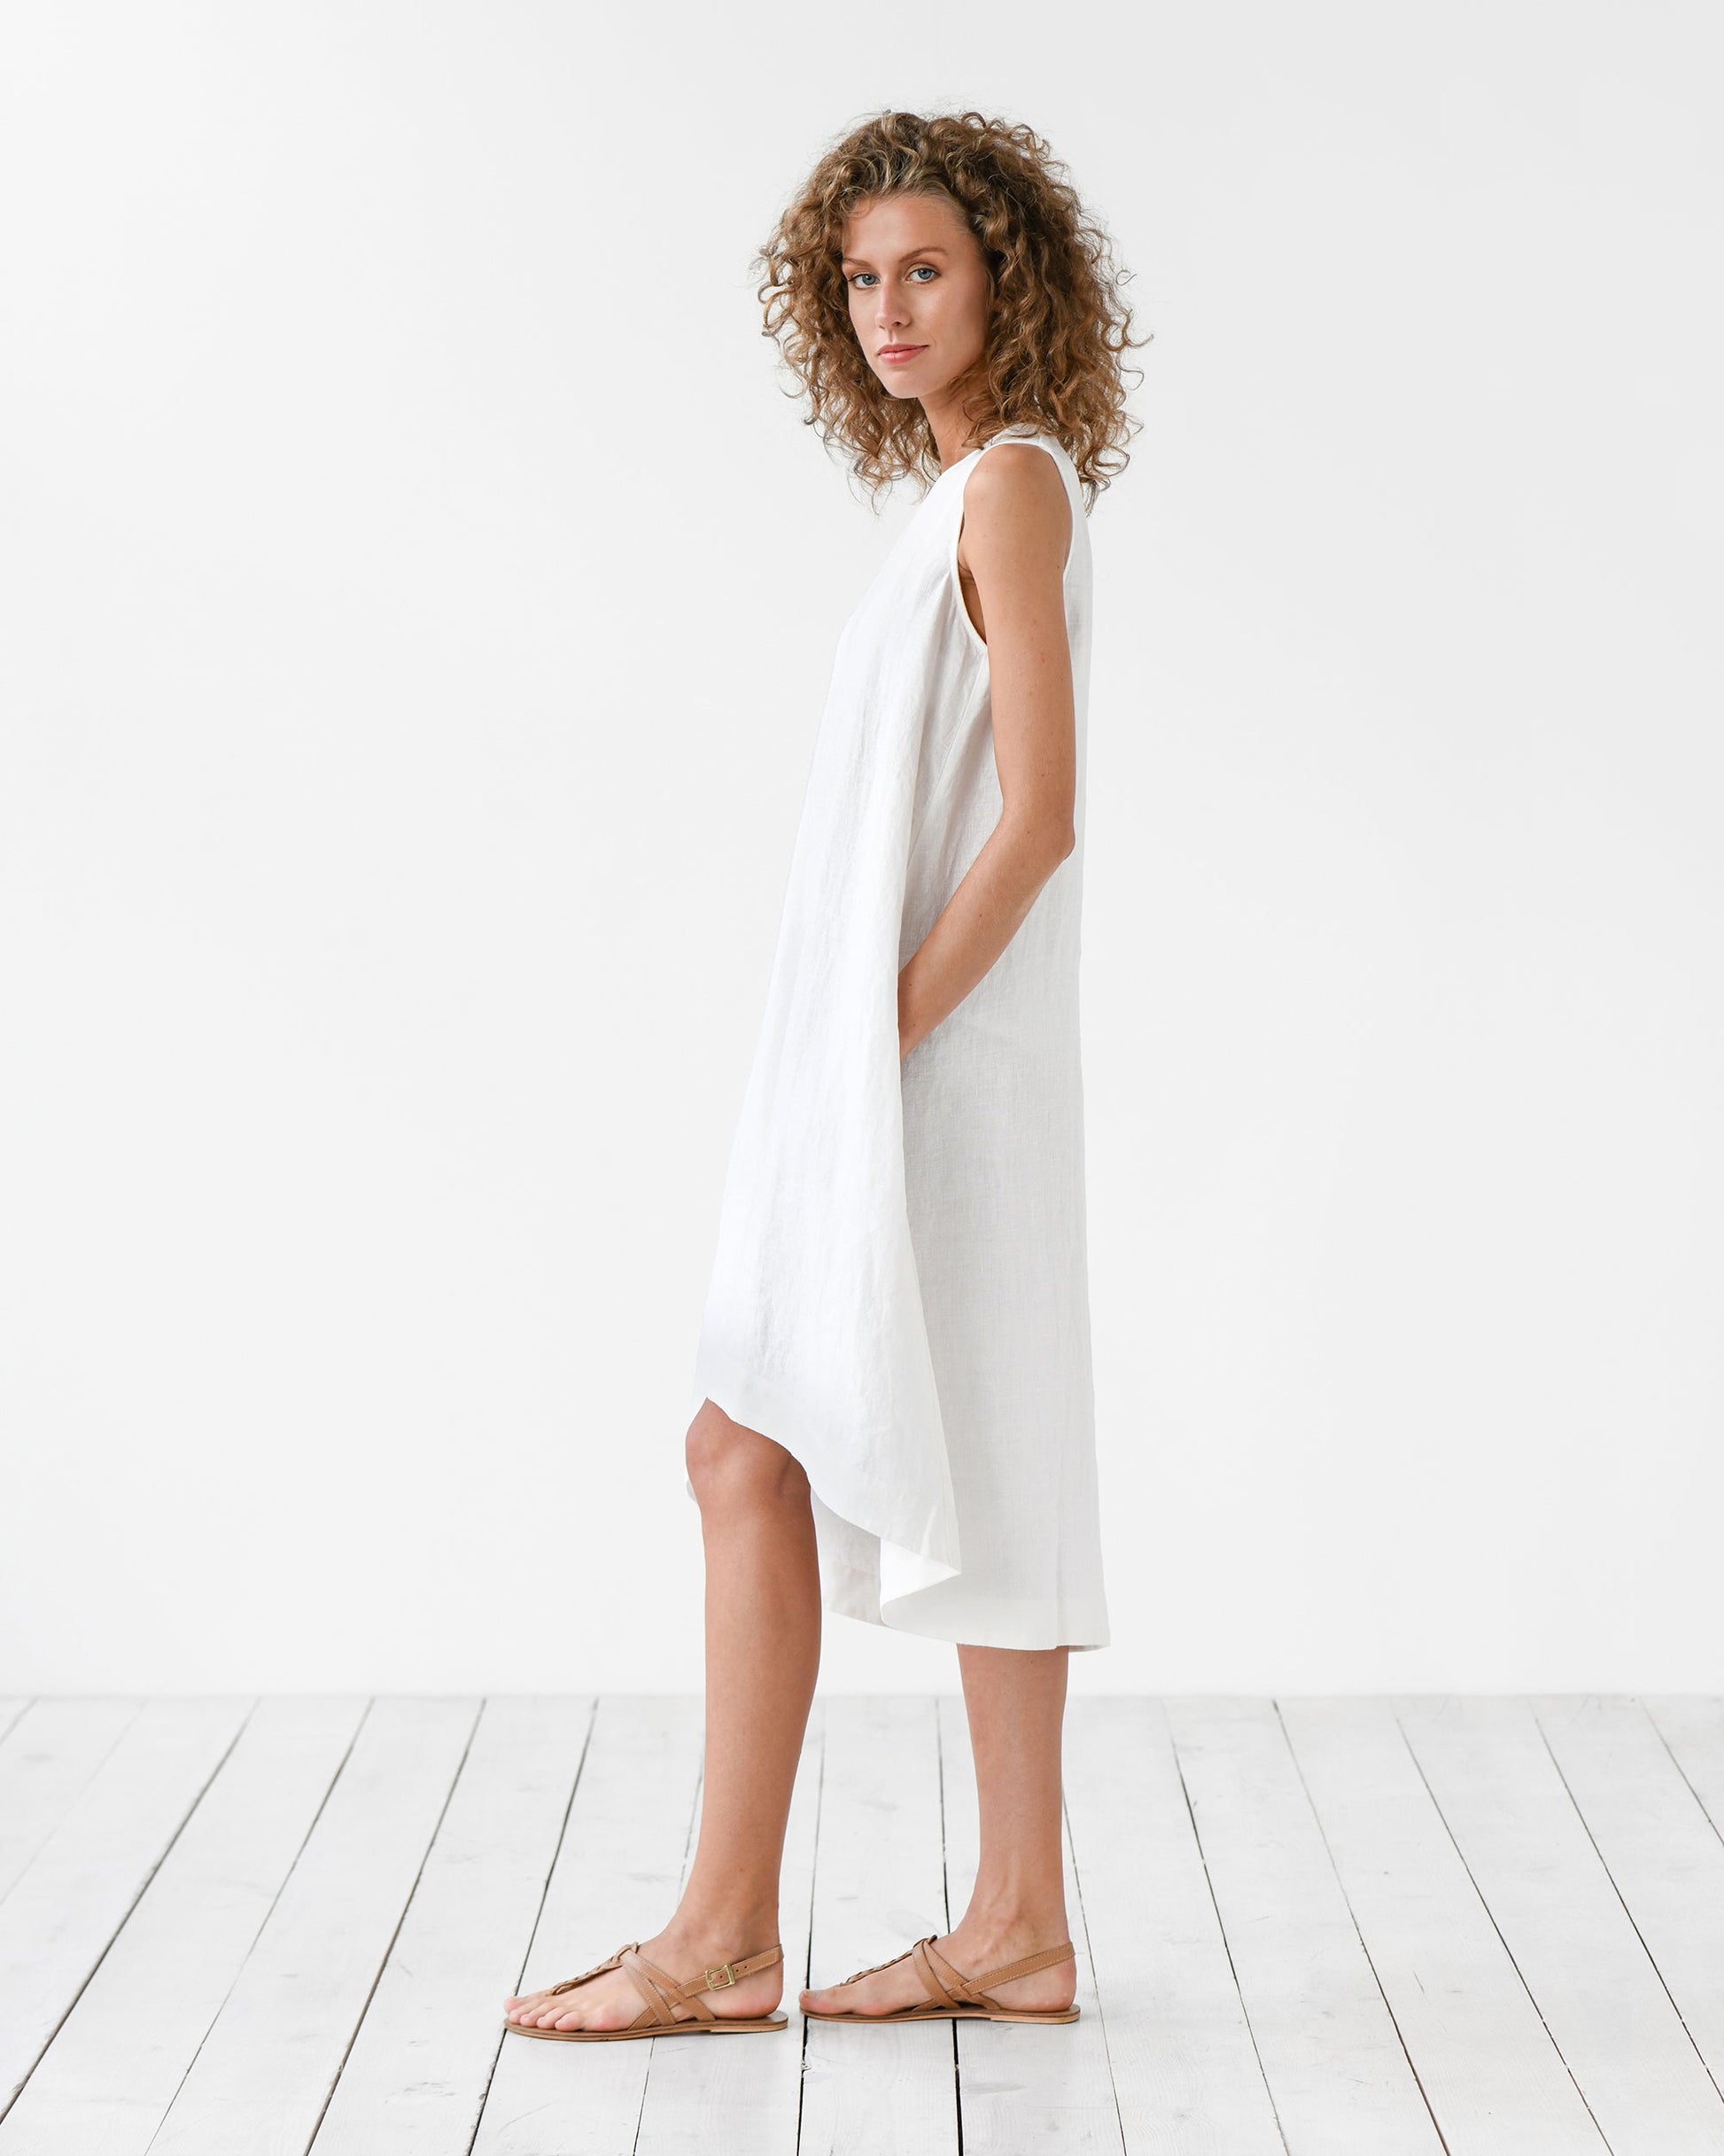 Linen Clothing For Women, Italian Linen Clothing UK